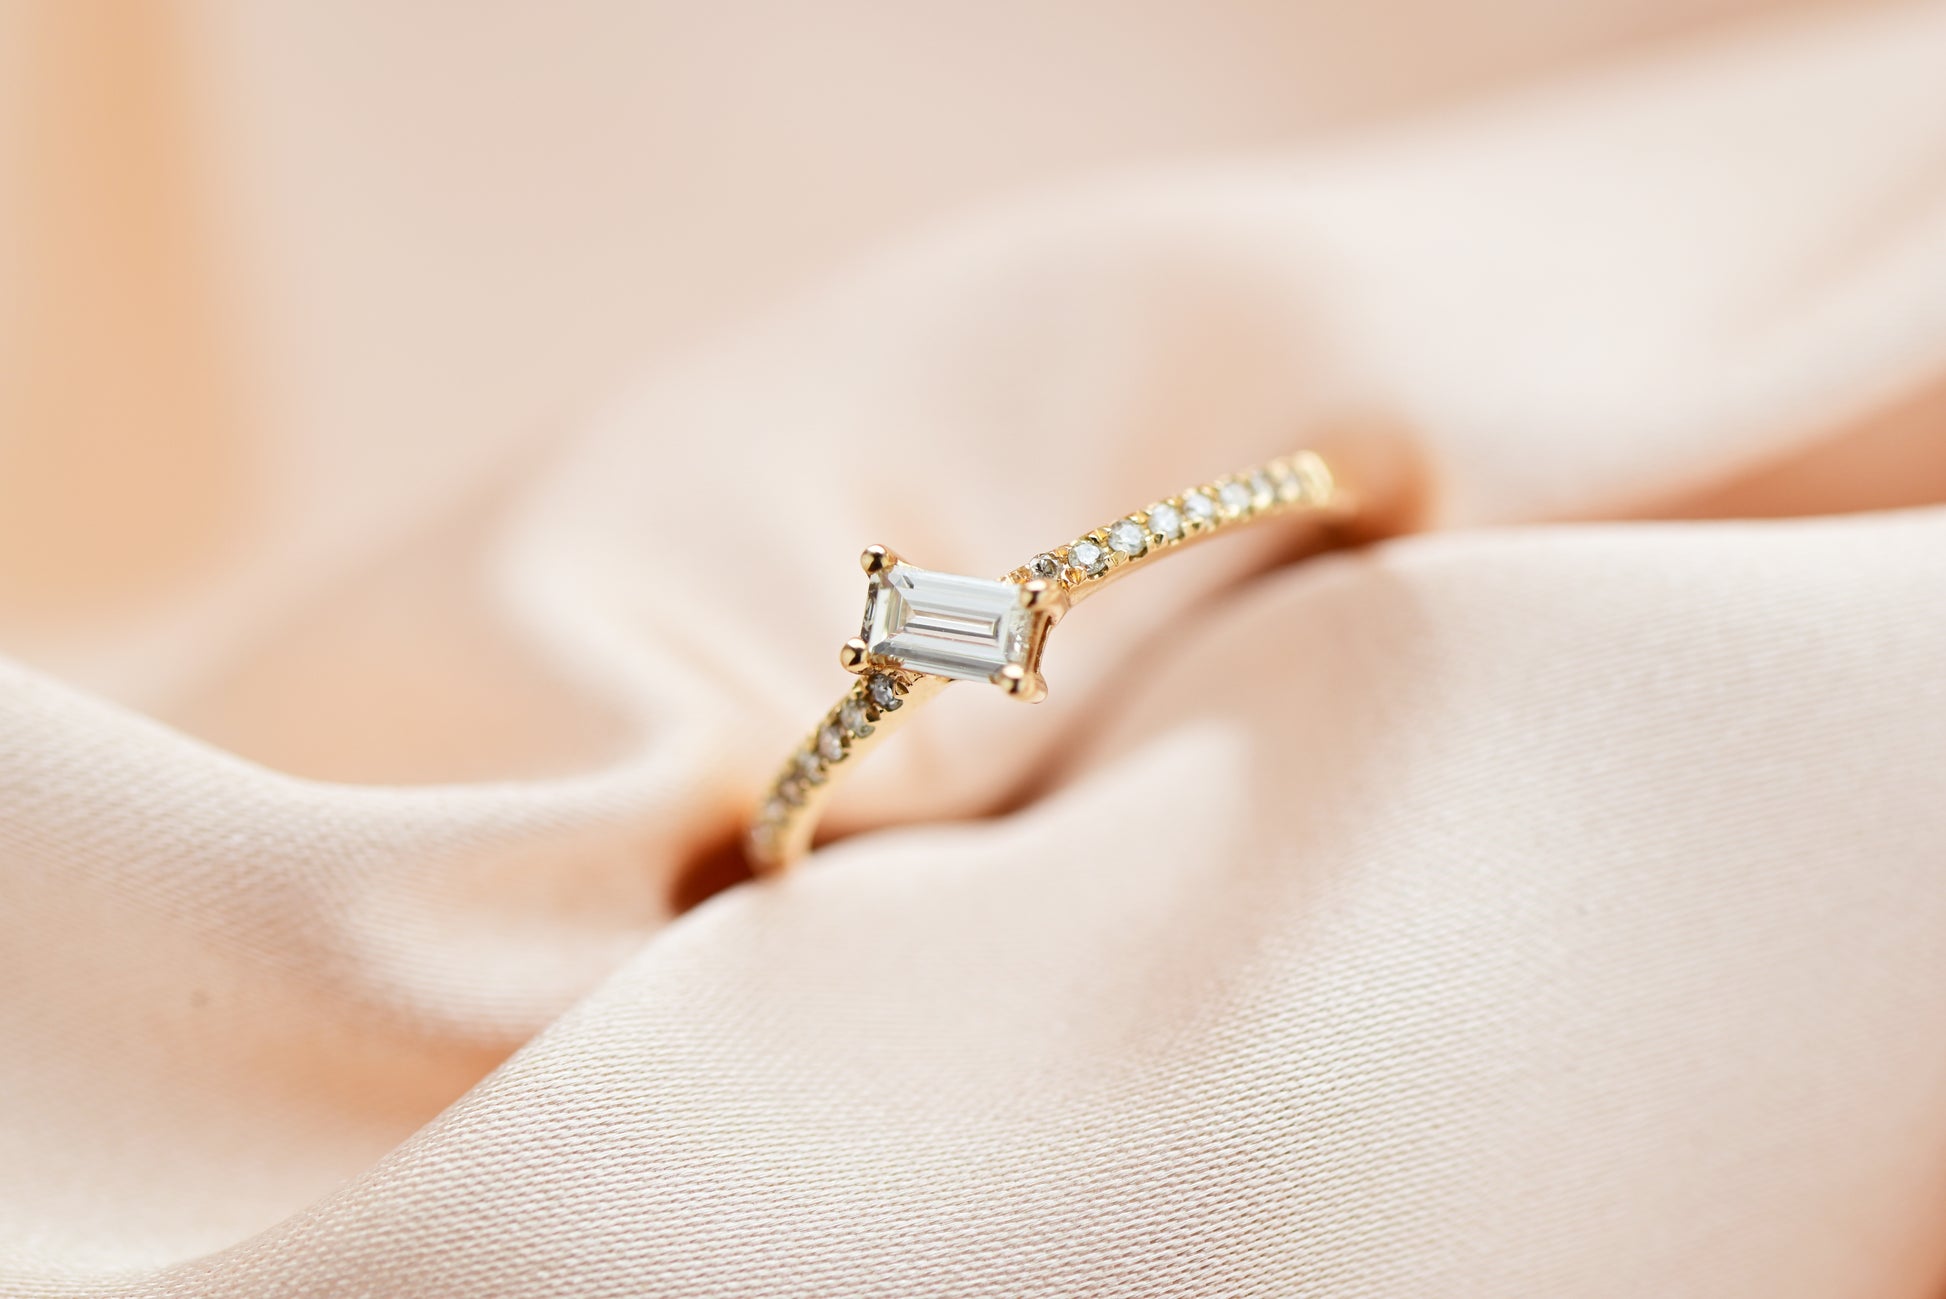 香檳色背景18k玫瑰金長方鑽石戒指 18k Rose Gold Asymmetrical Baguette Diamond Ring in champagne gold background 